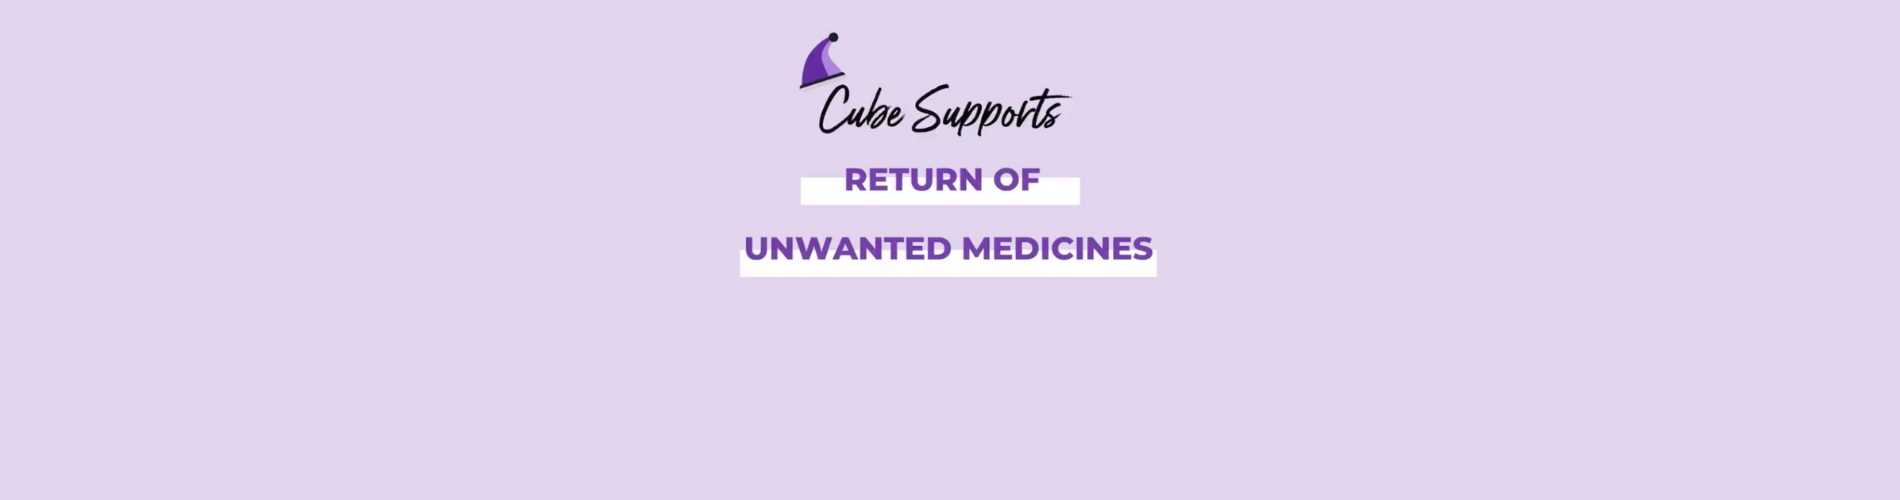 Unwanted Medicines